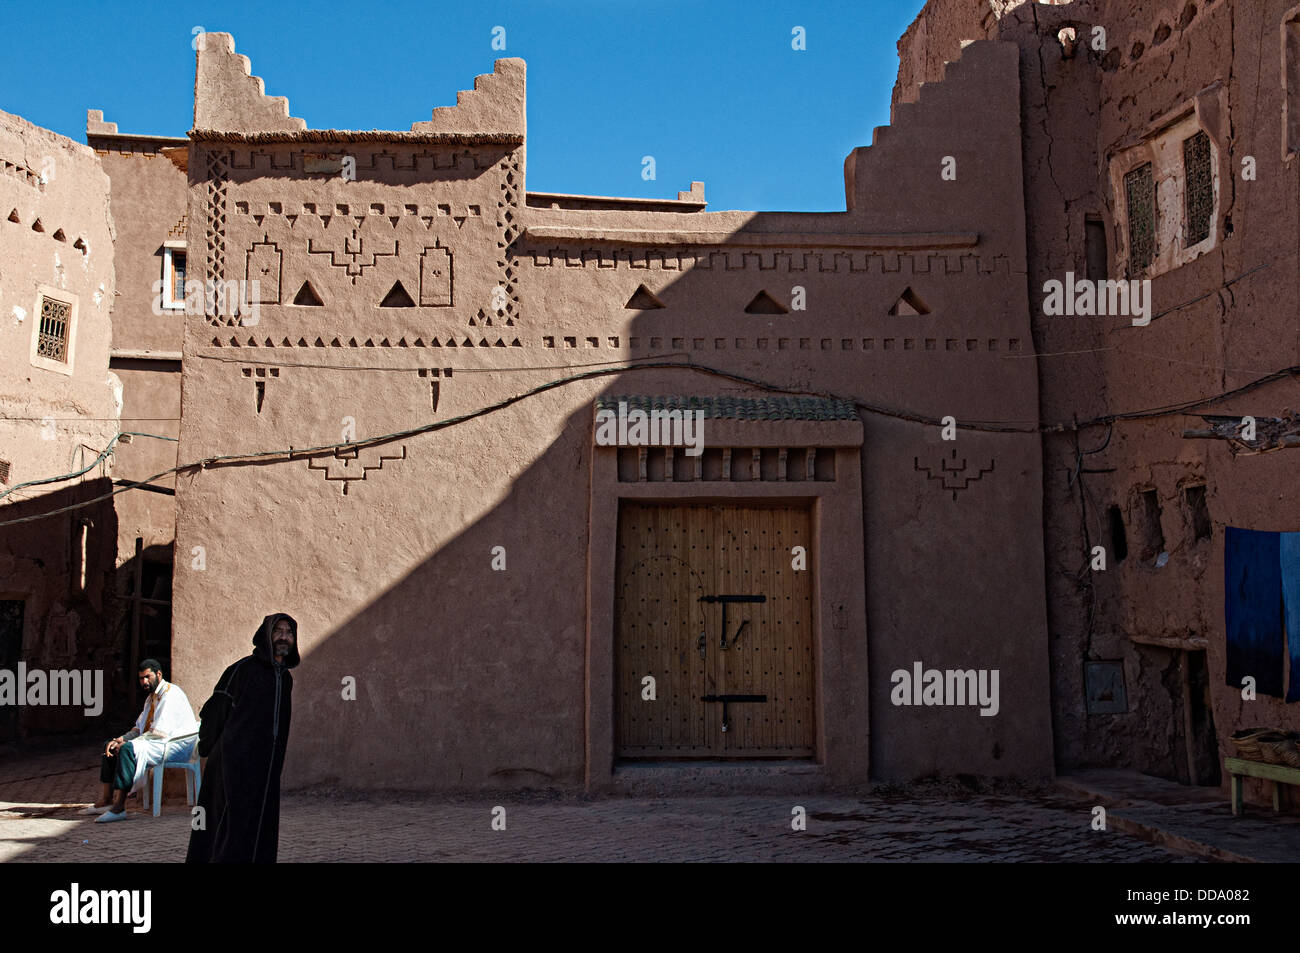 Maisons d'Adobe dans le mellah (quartier juif), Ouarzazate, Maroc Banque D'Images